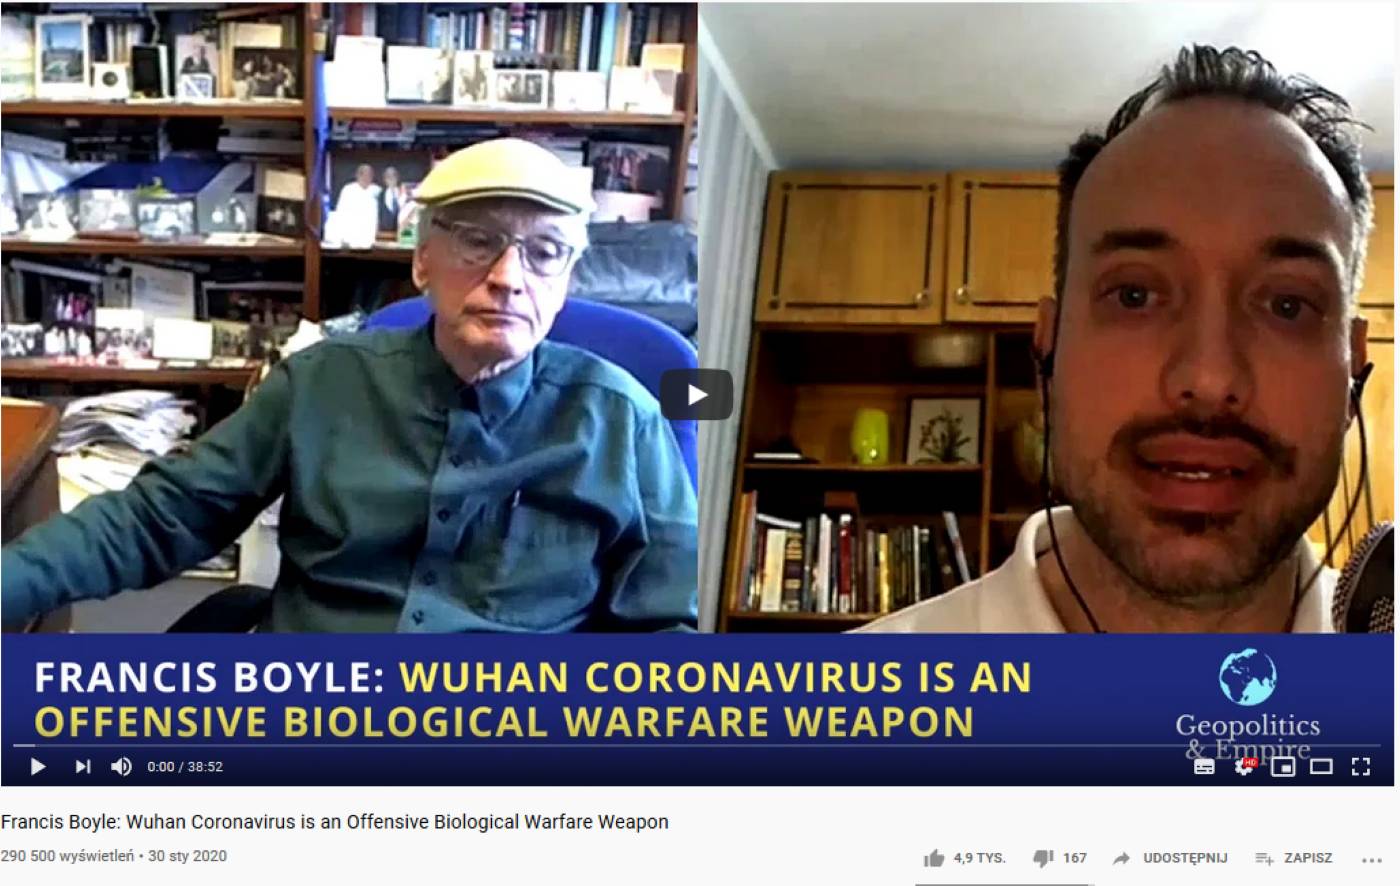 Koronawirus - fake news. Obserwujemy zalew nieprawdziwych informacji, które pochodzą najprawdopodobniej z Rosji